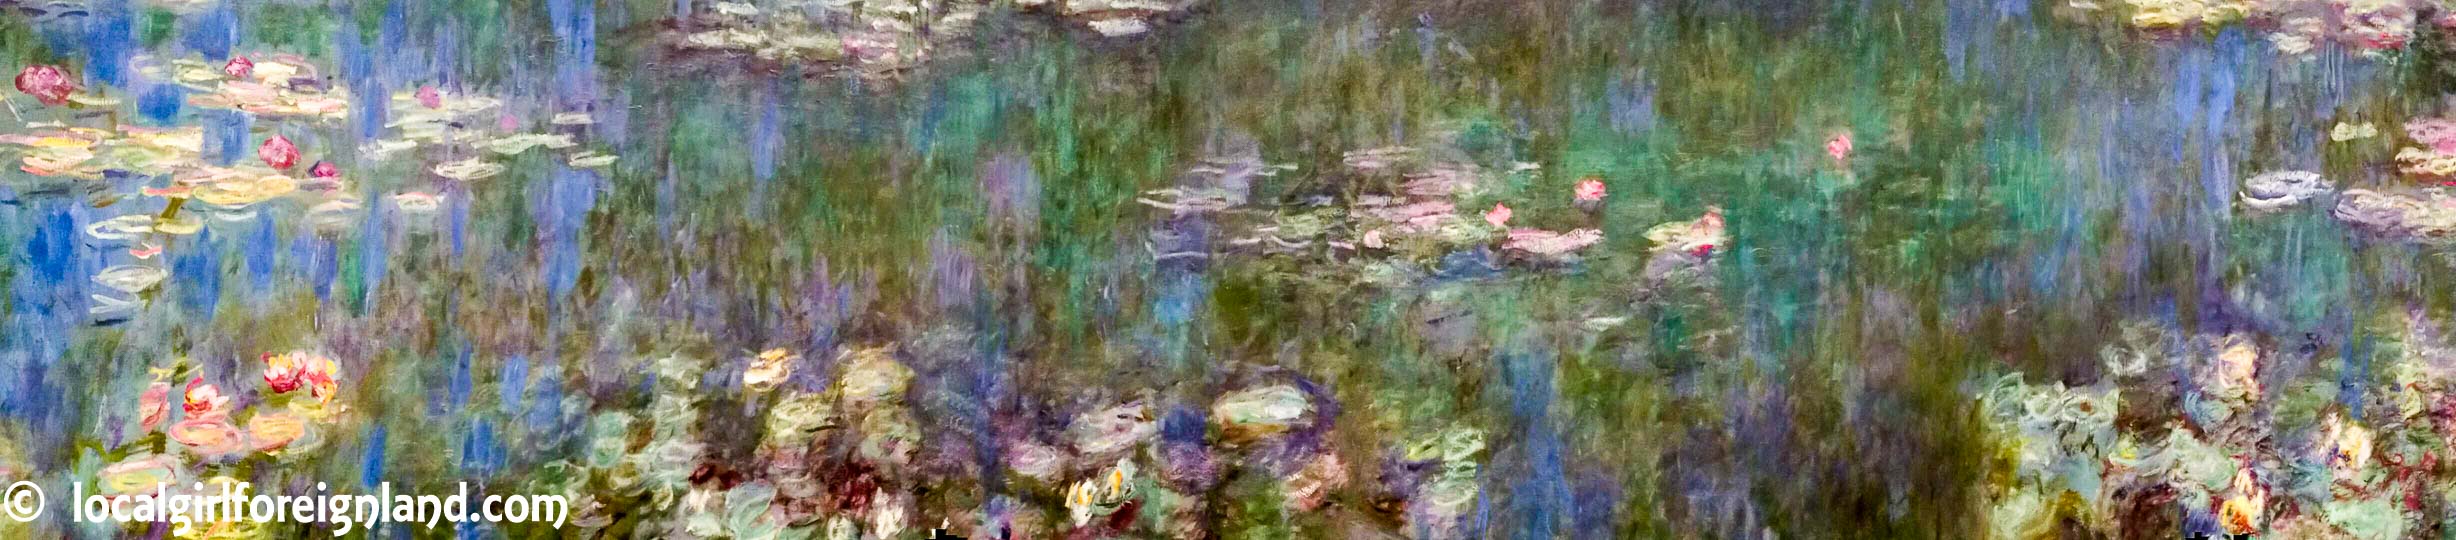 musee-de-l-orangerie-paris-claude-monet-water-lilies-3335